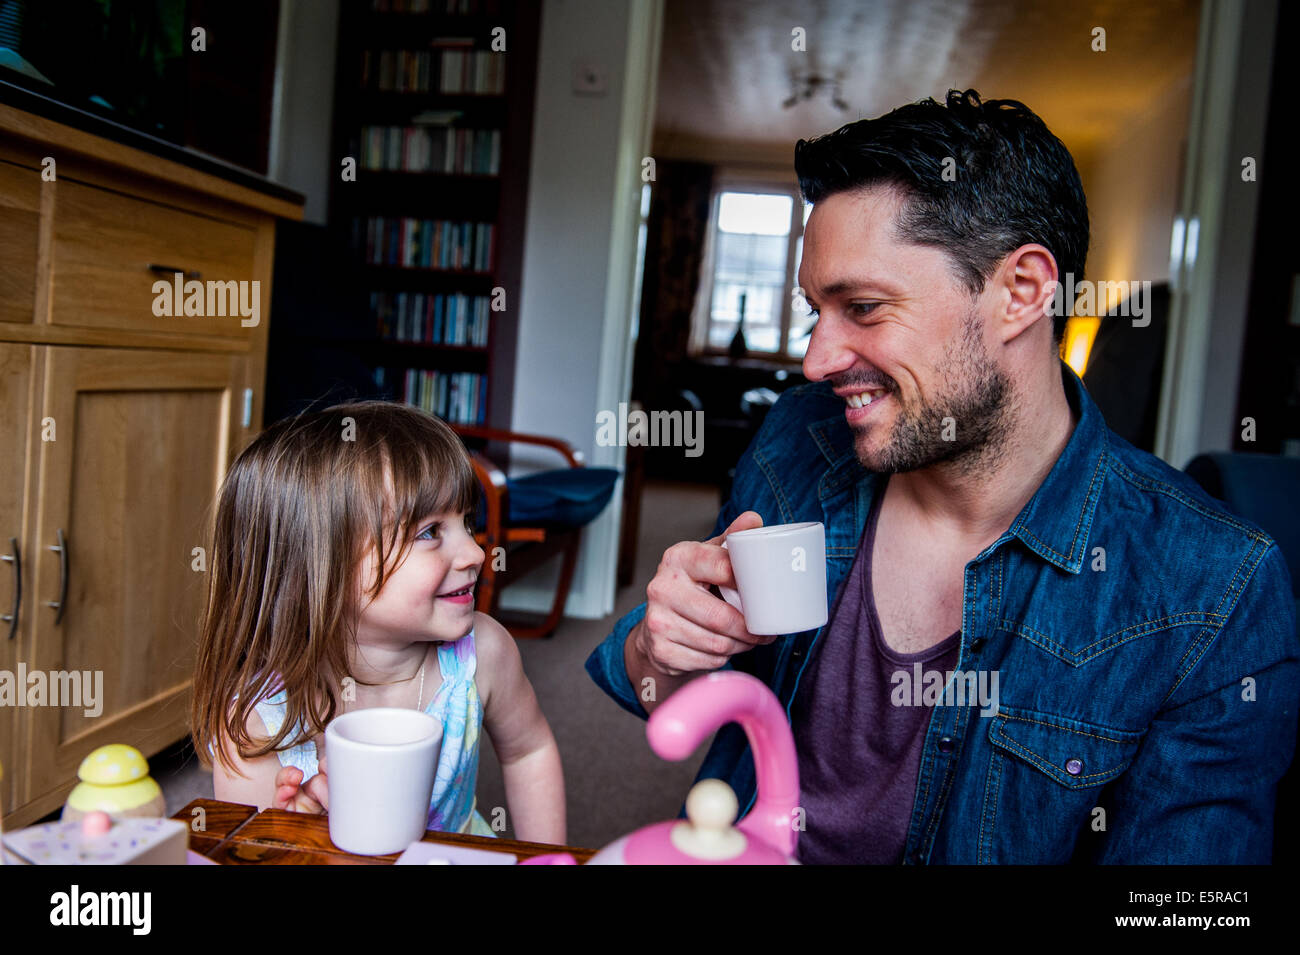 Smiling dad avec sa fille jouer cuisines Banque D'Images